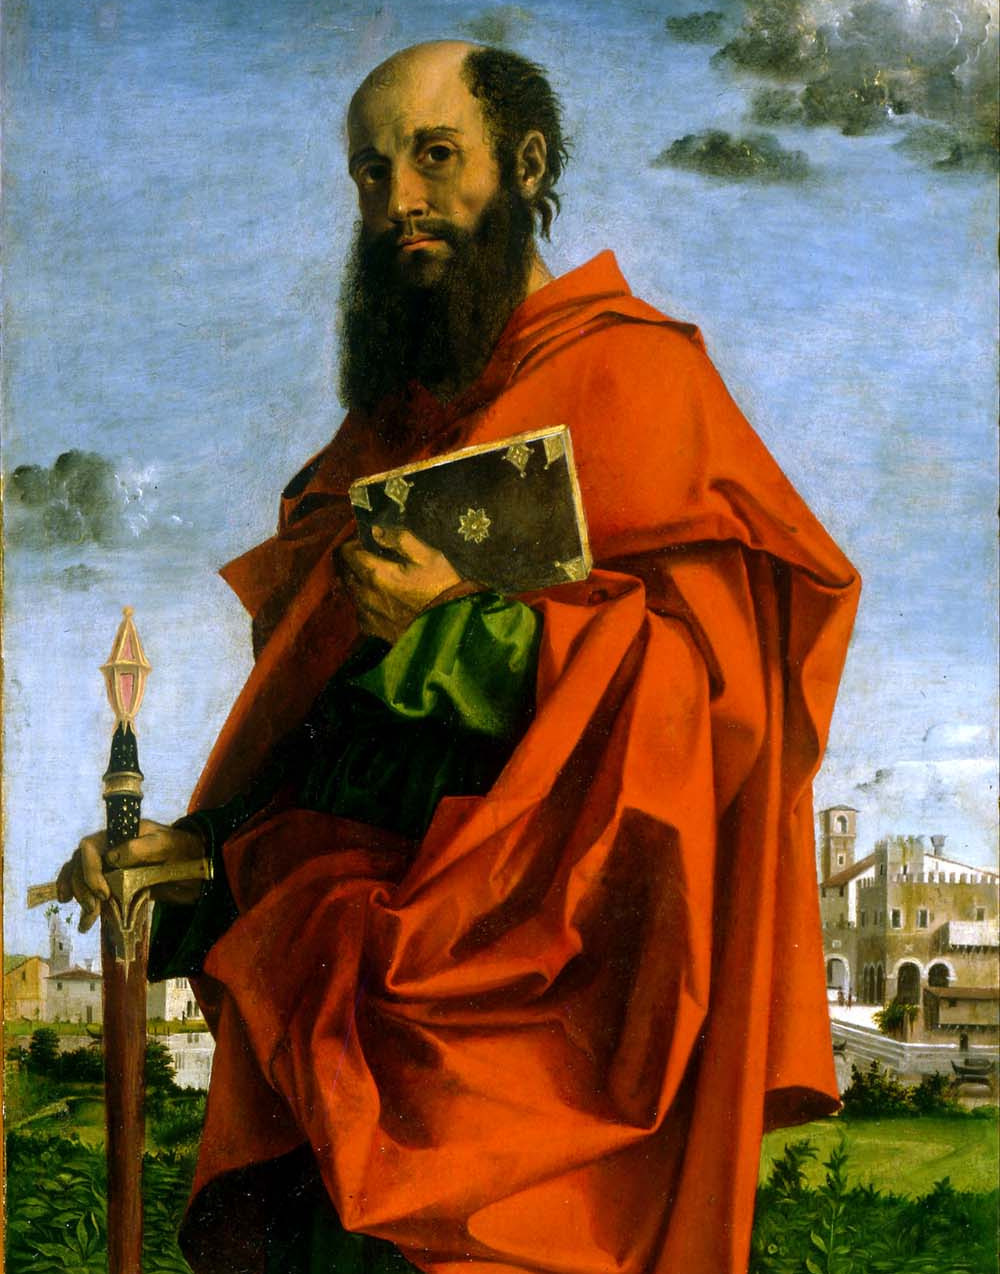 Ein altes Gemälde zeigt einen Mann mit einem Schwarzen, langen Bart und einem Buch in der Hand